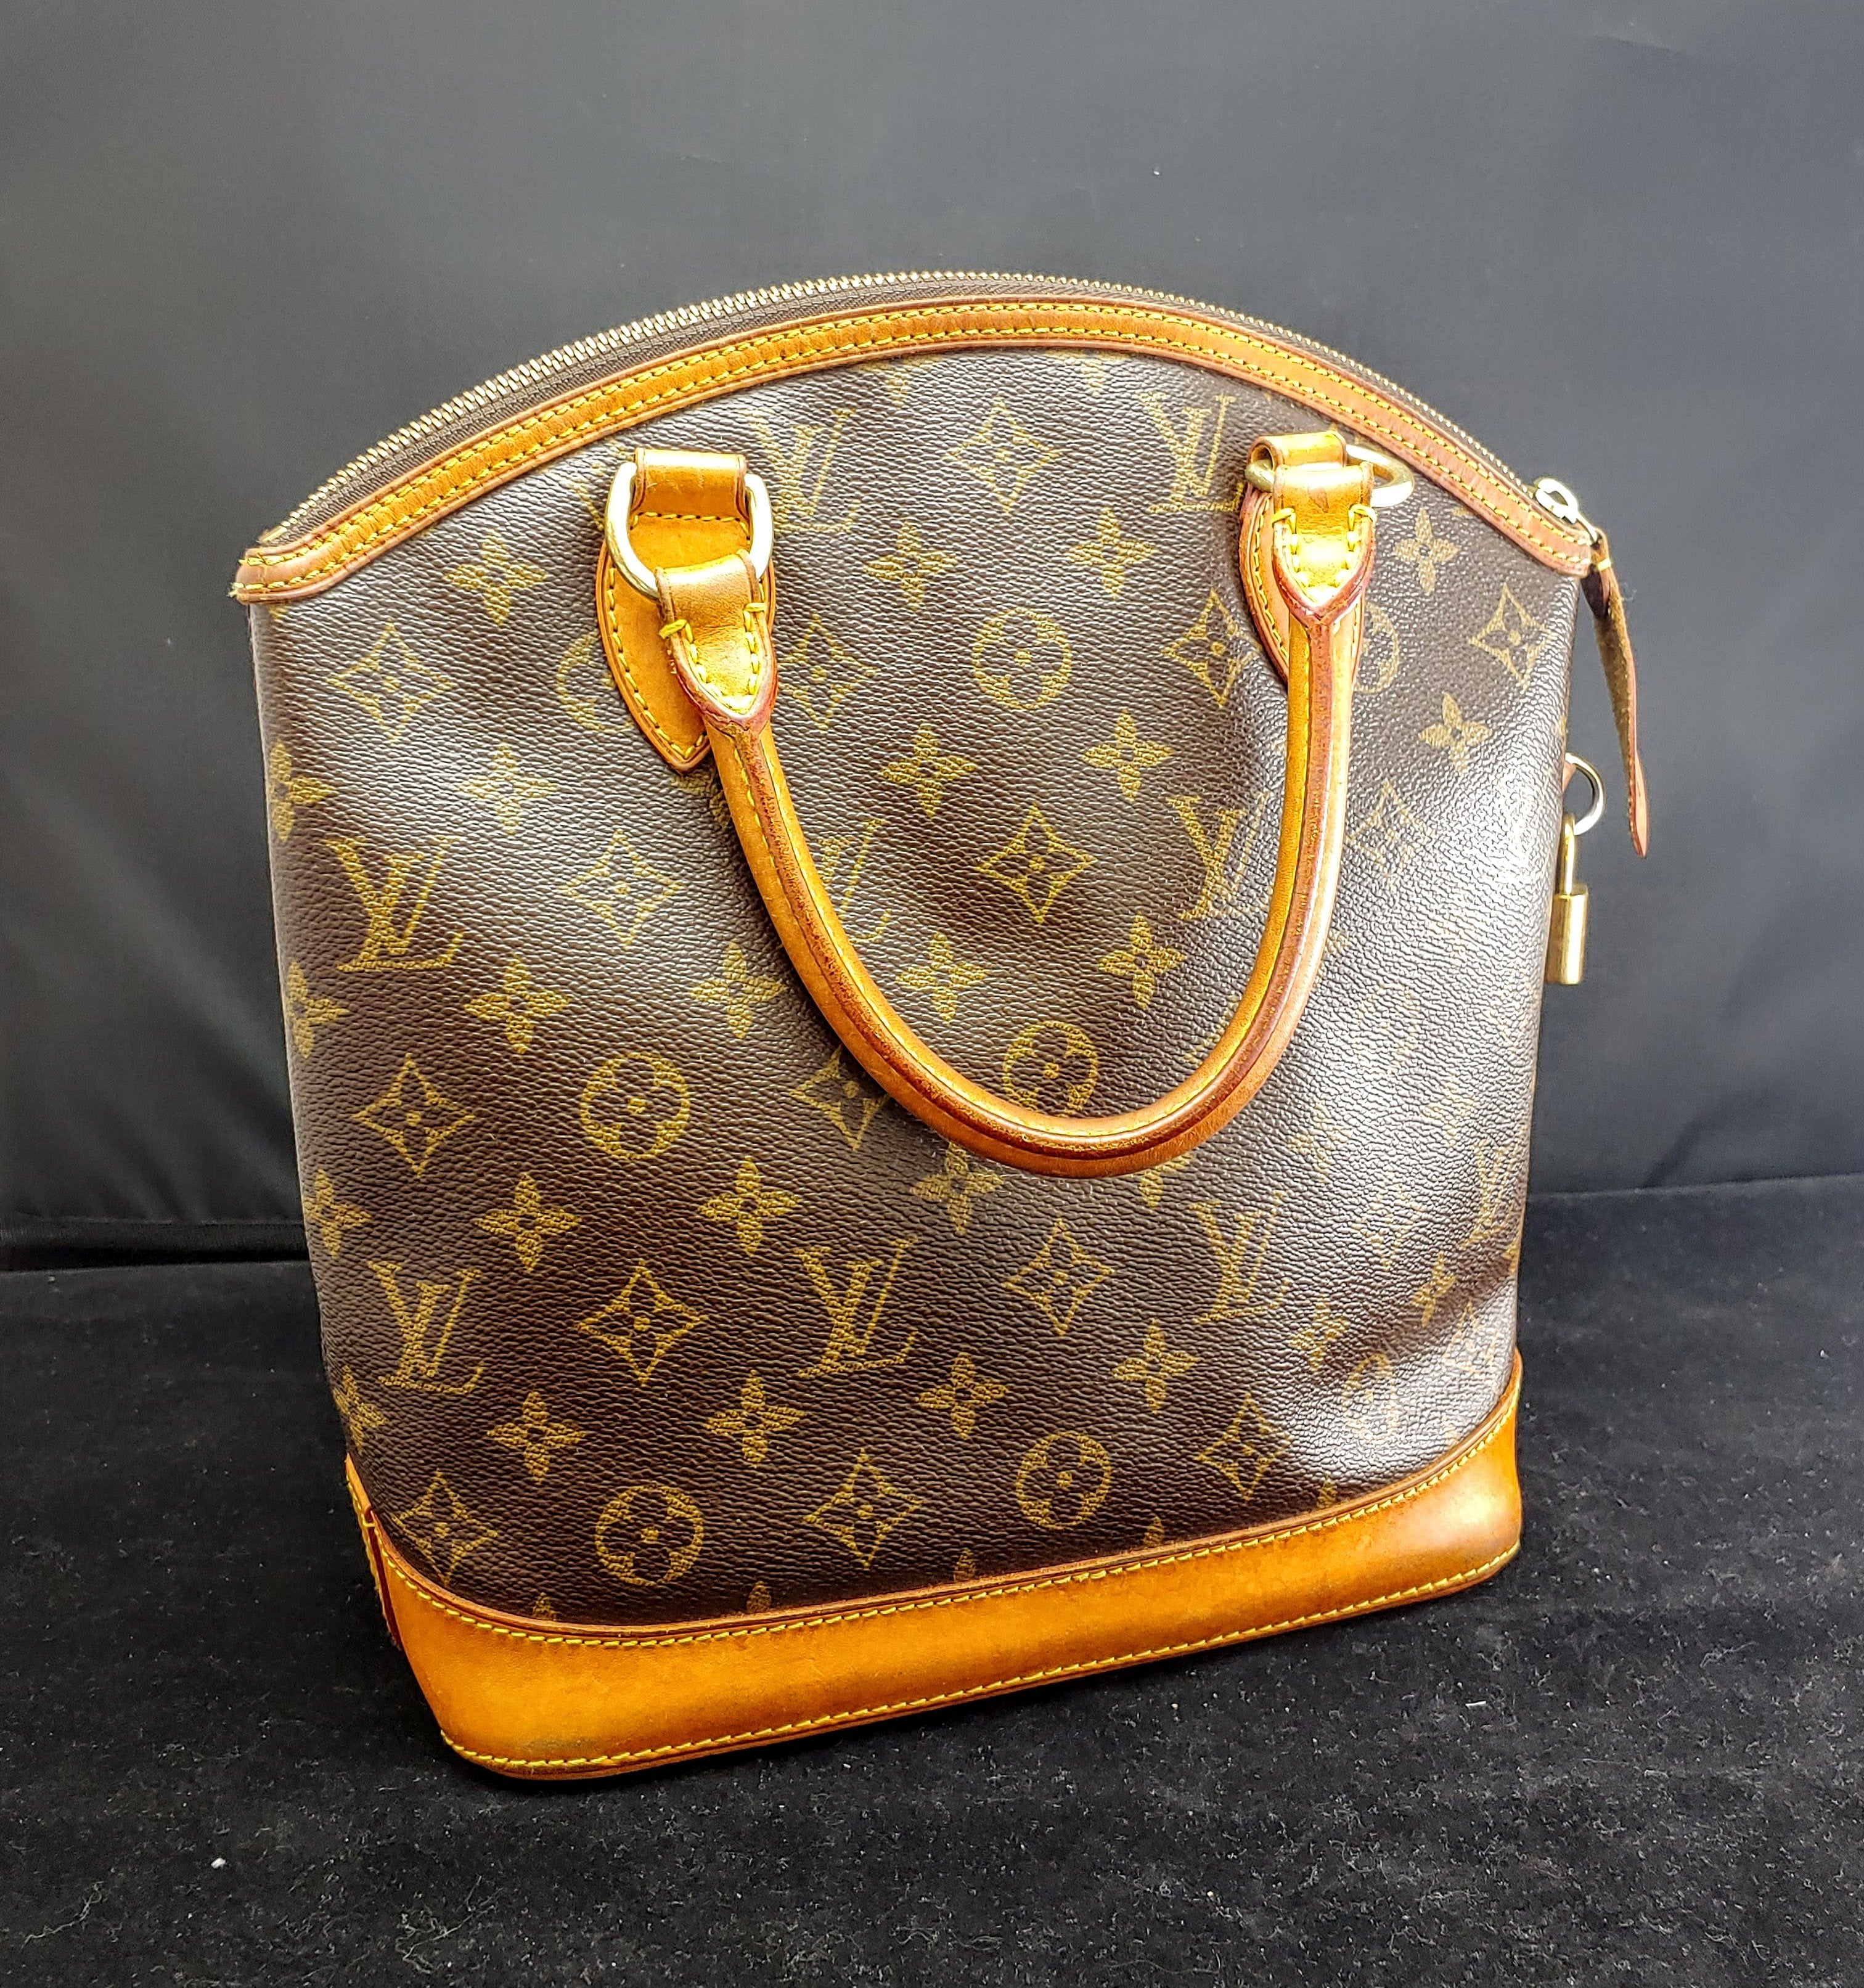 LOUIS VUITTON Vintage Monogram Cosmetic Bag - $1K Appraisal Value w/ CoA!